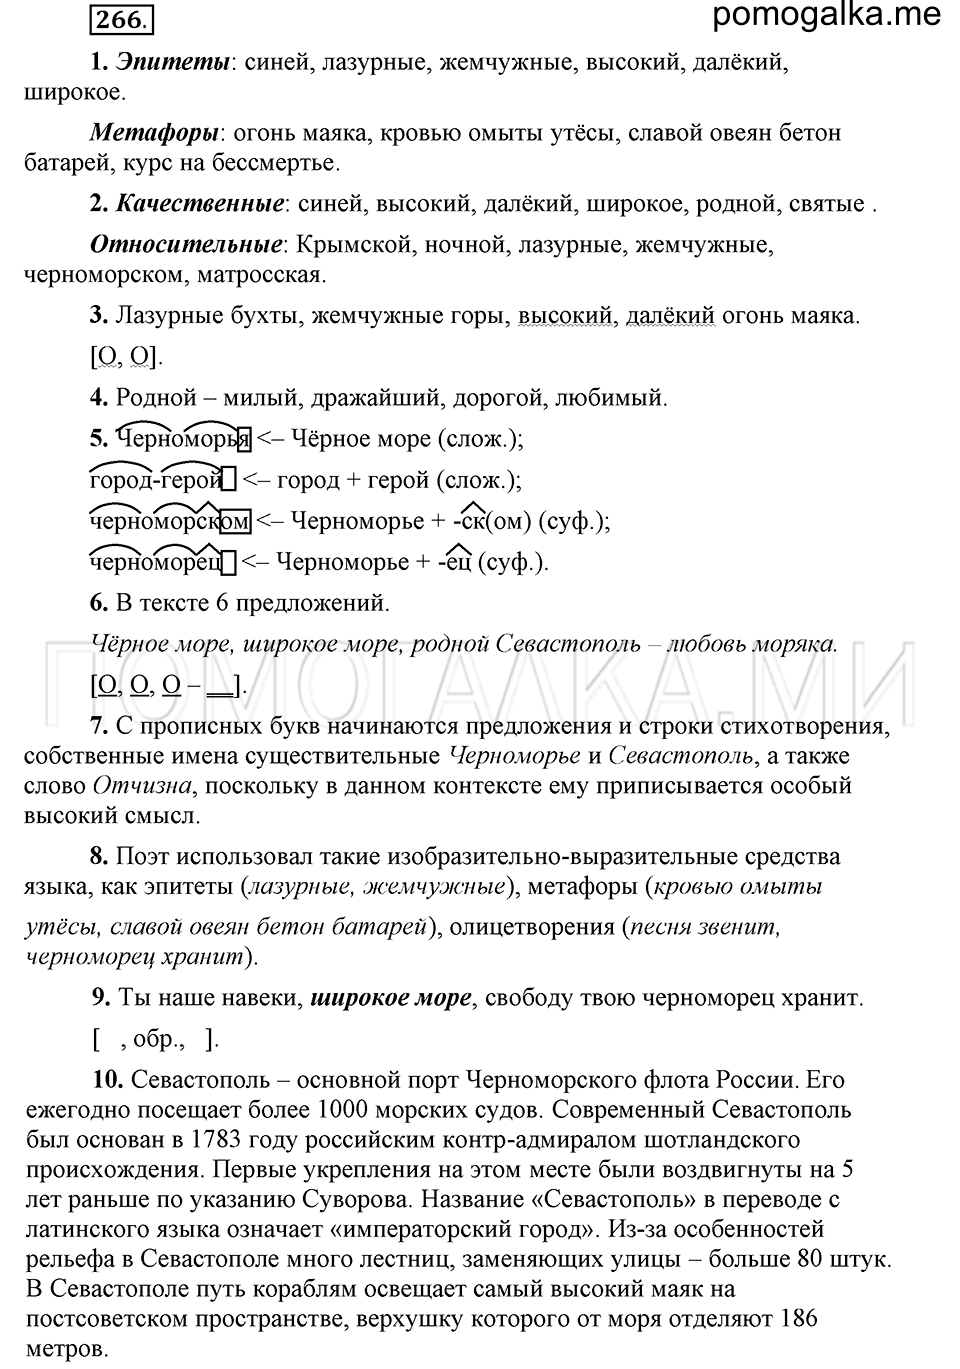 упражнение 266 русский язык 6 класс Быстрова, Кибирева 1 часть 2019 год